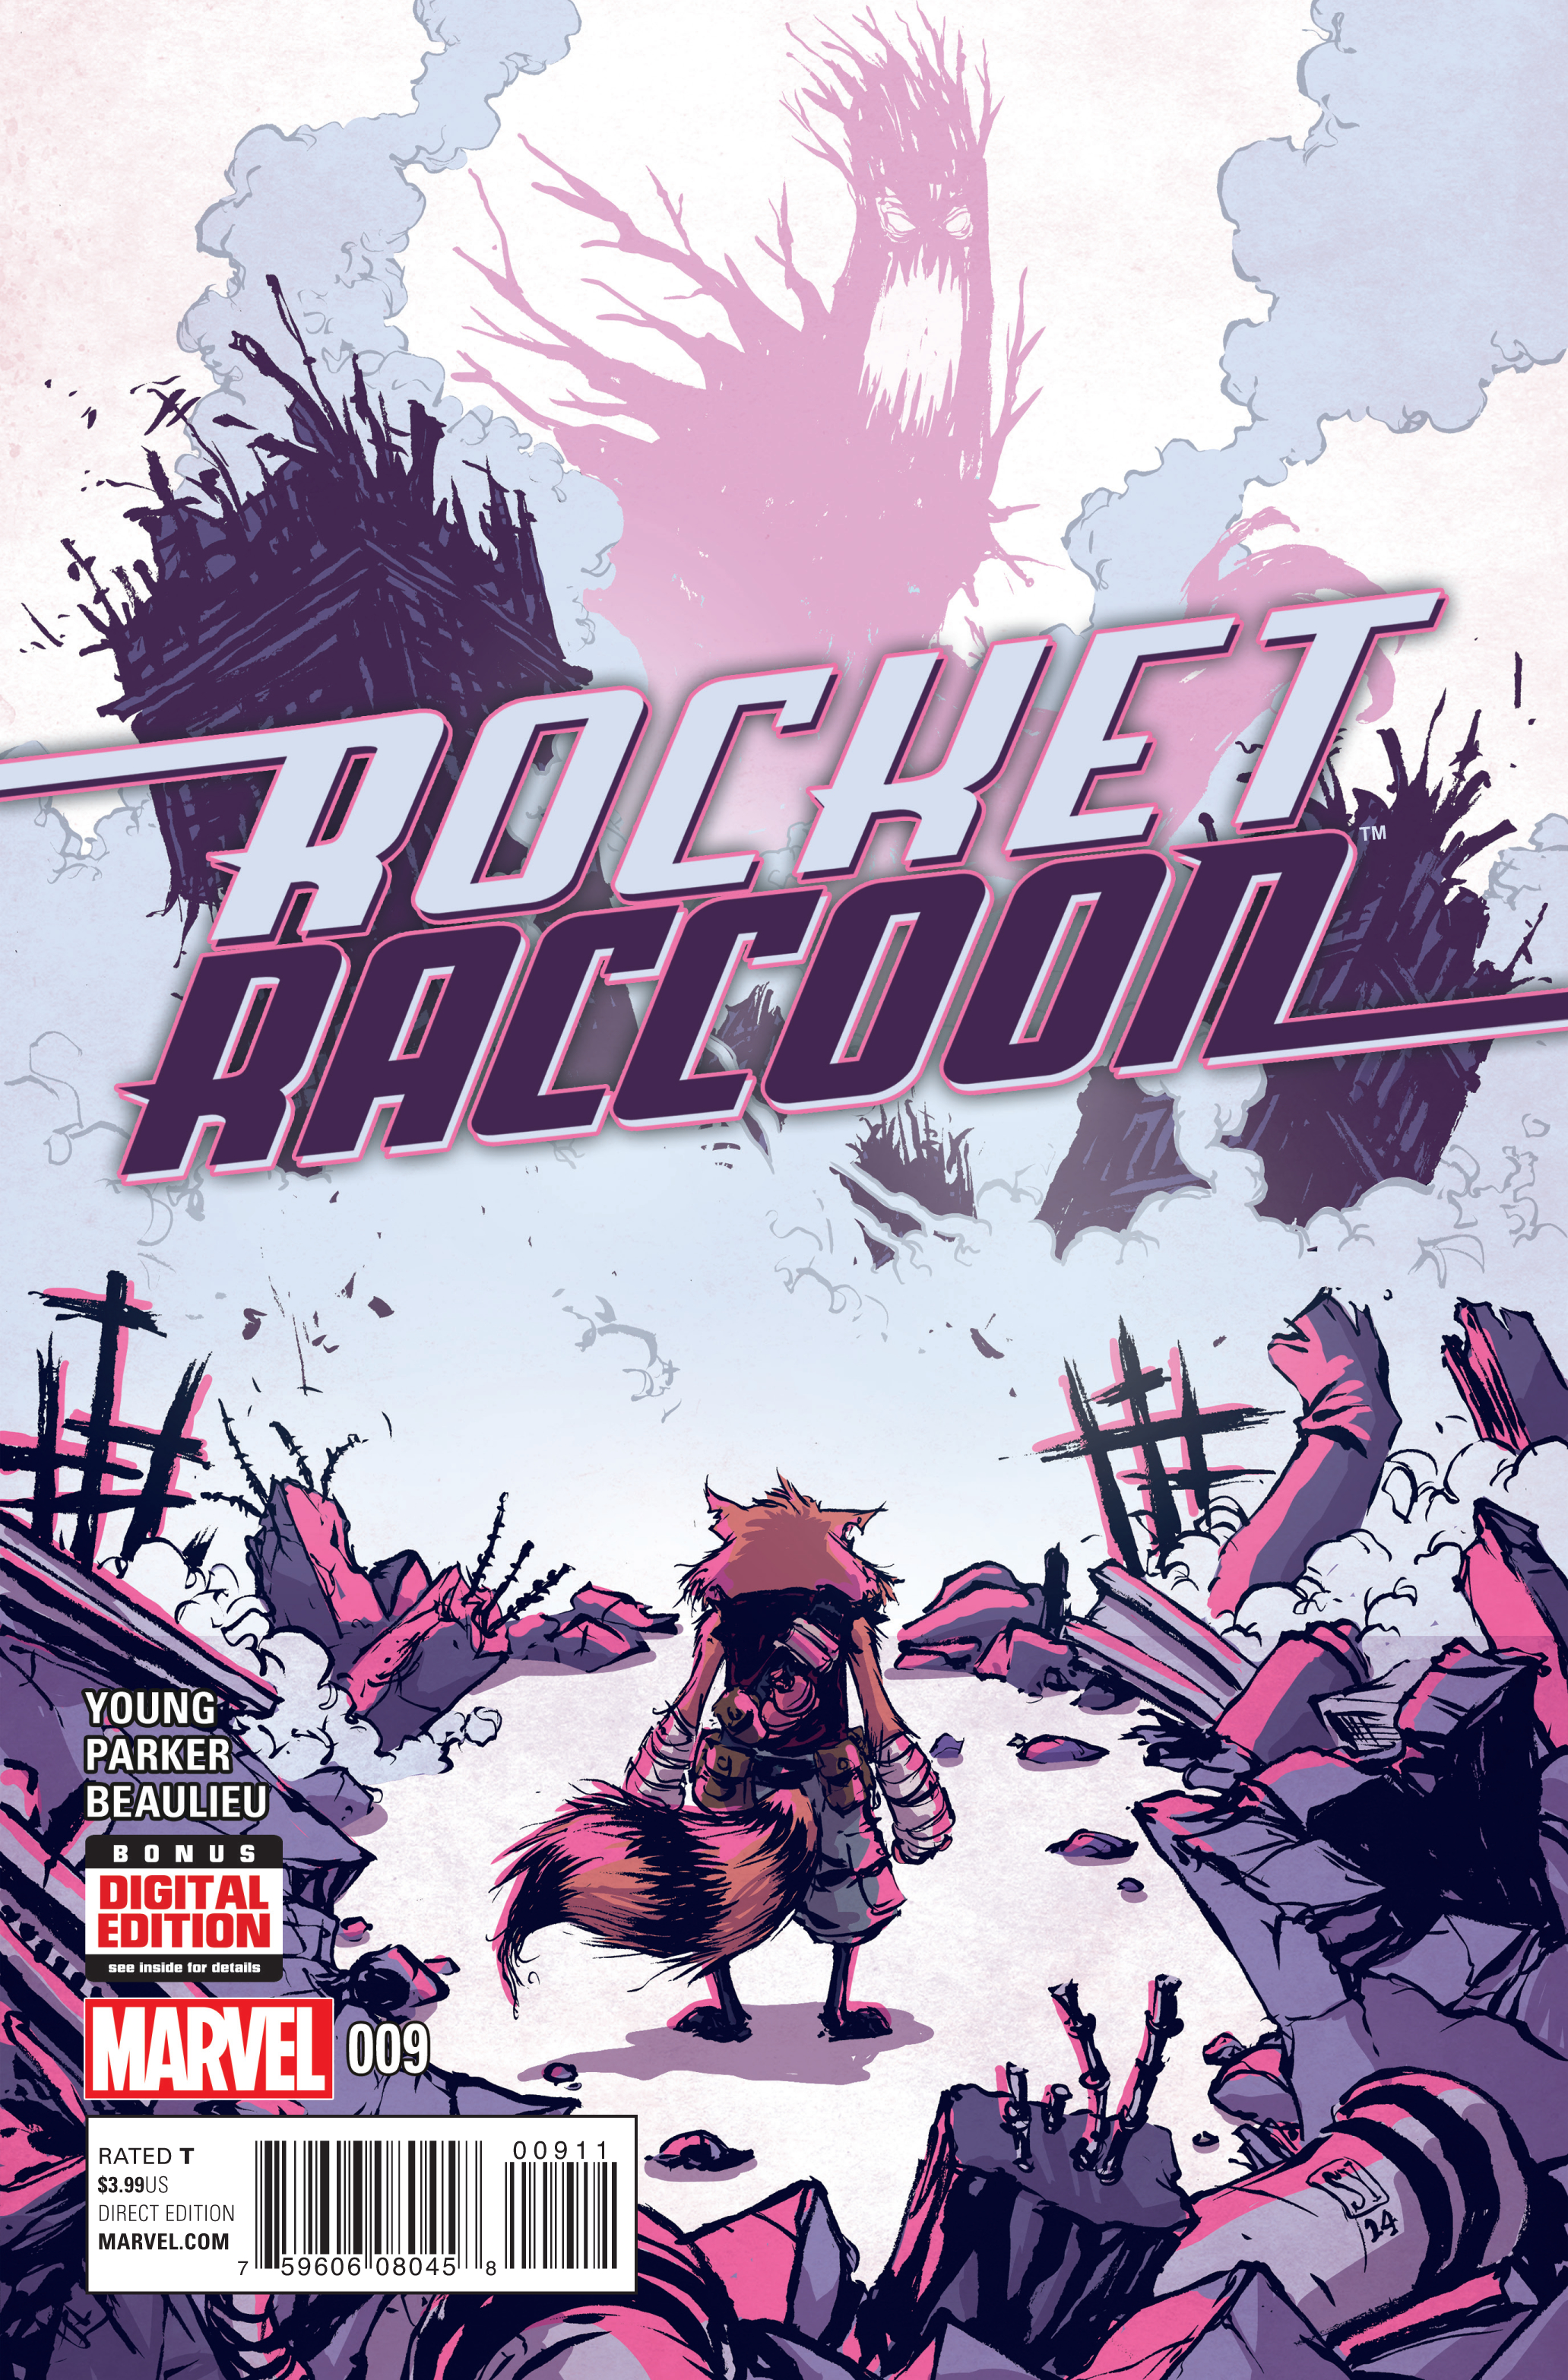 ROCKET RACCOON #9